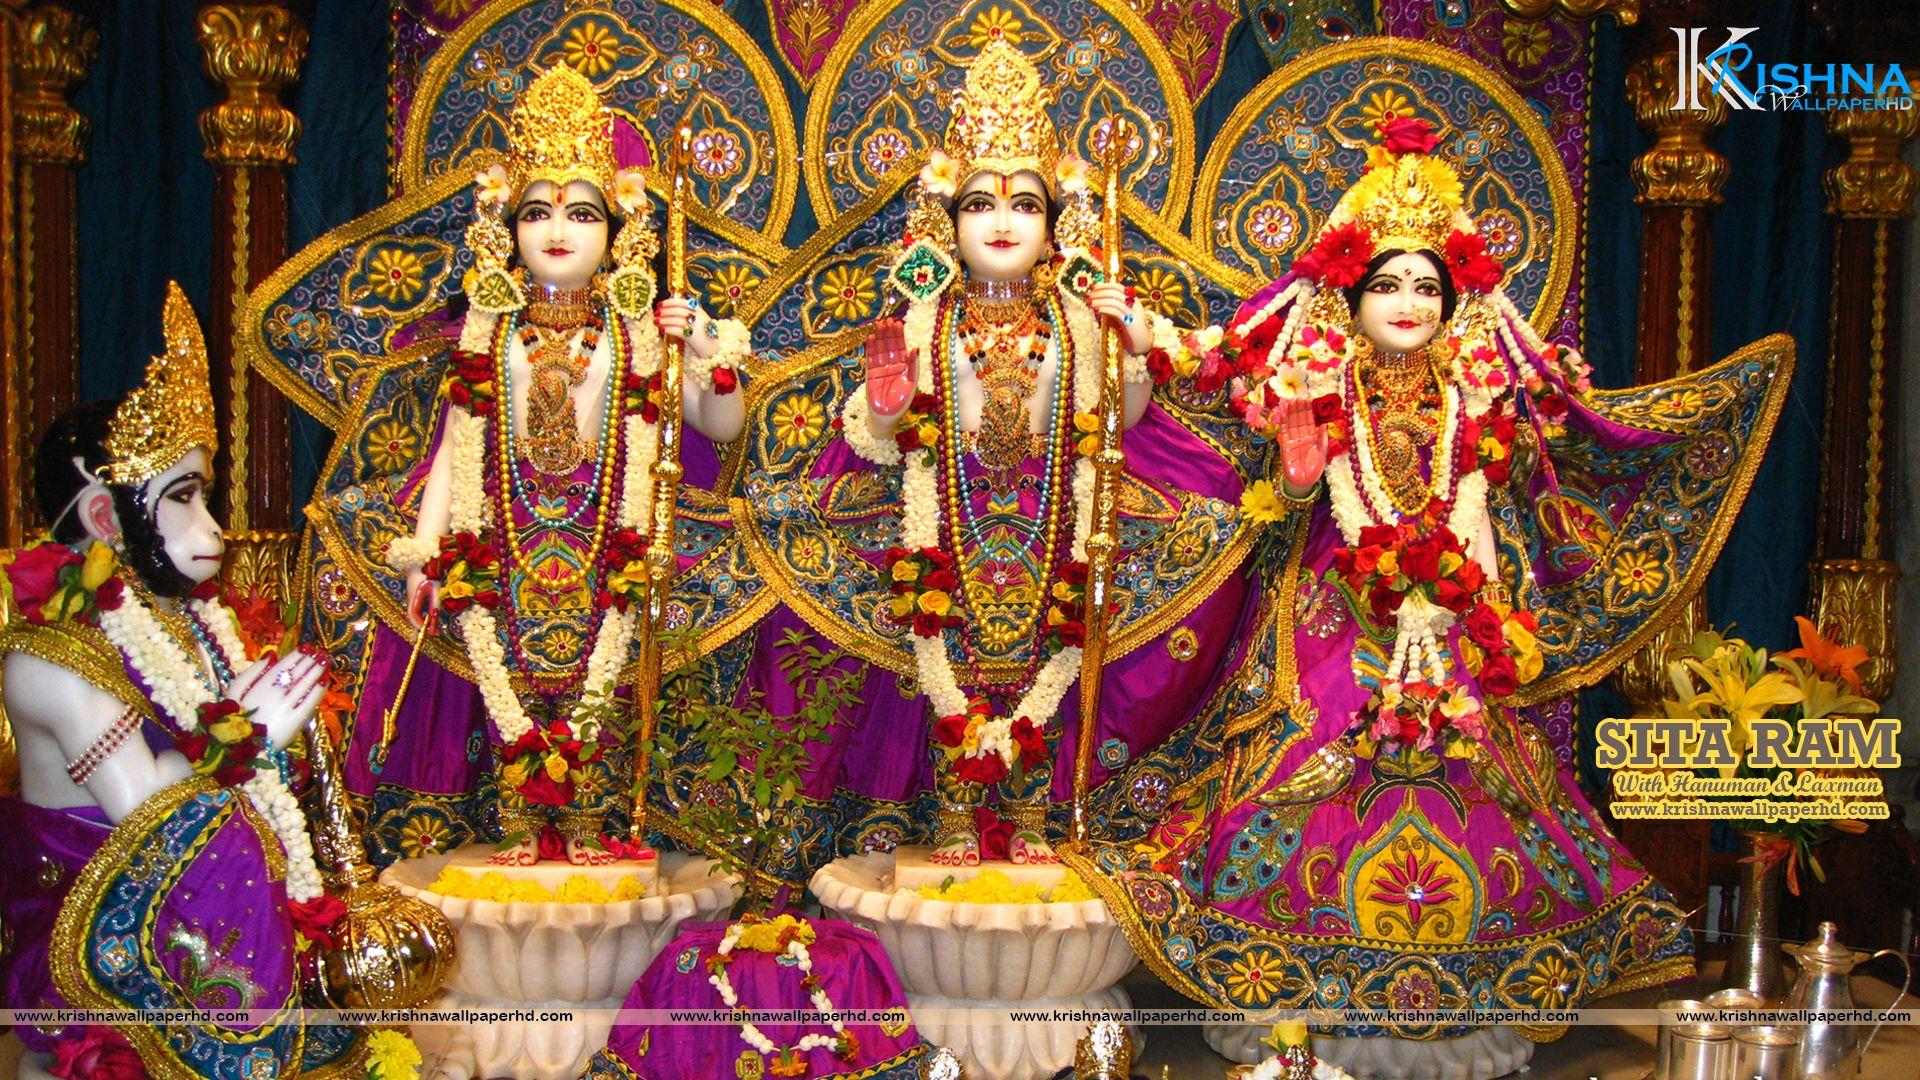 1920x1080 Sita Ram Hình nền full HD Krishna Wallpaper HD Free God Hình nền HD, Hình ảnh, Bức ảnh và Hình ảnh